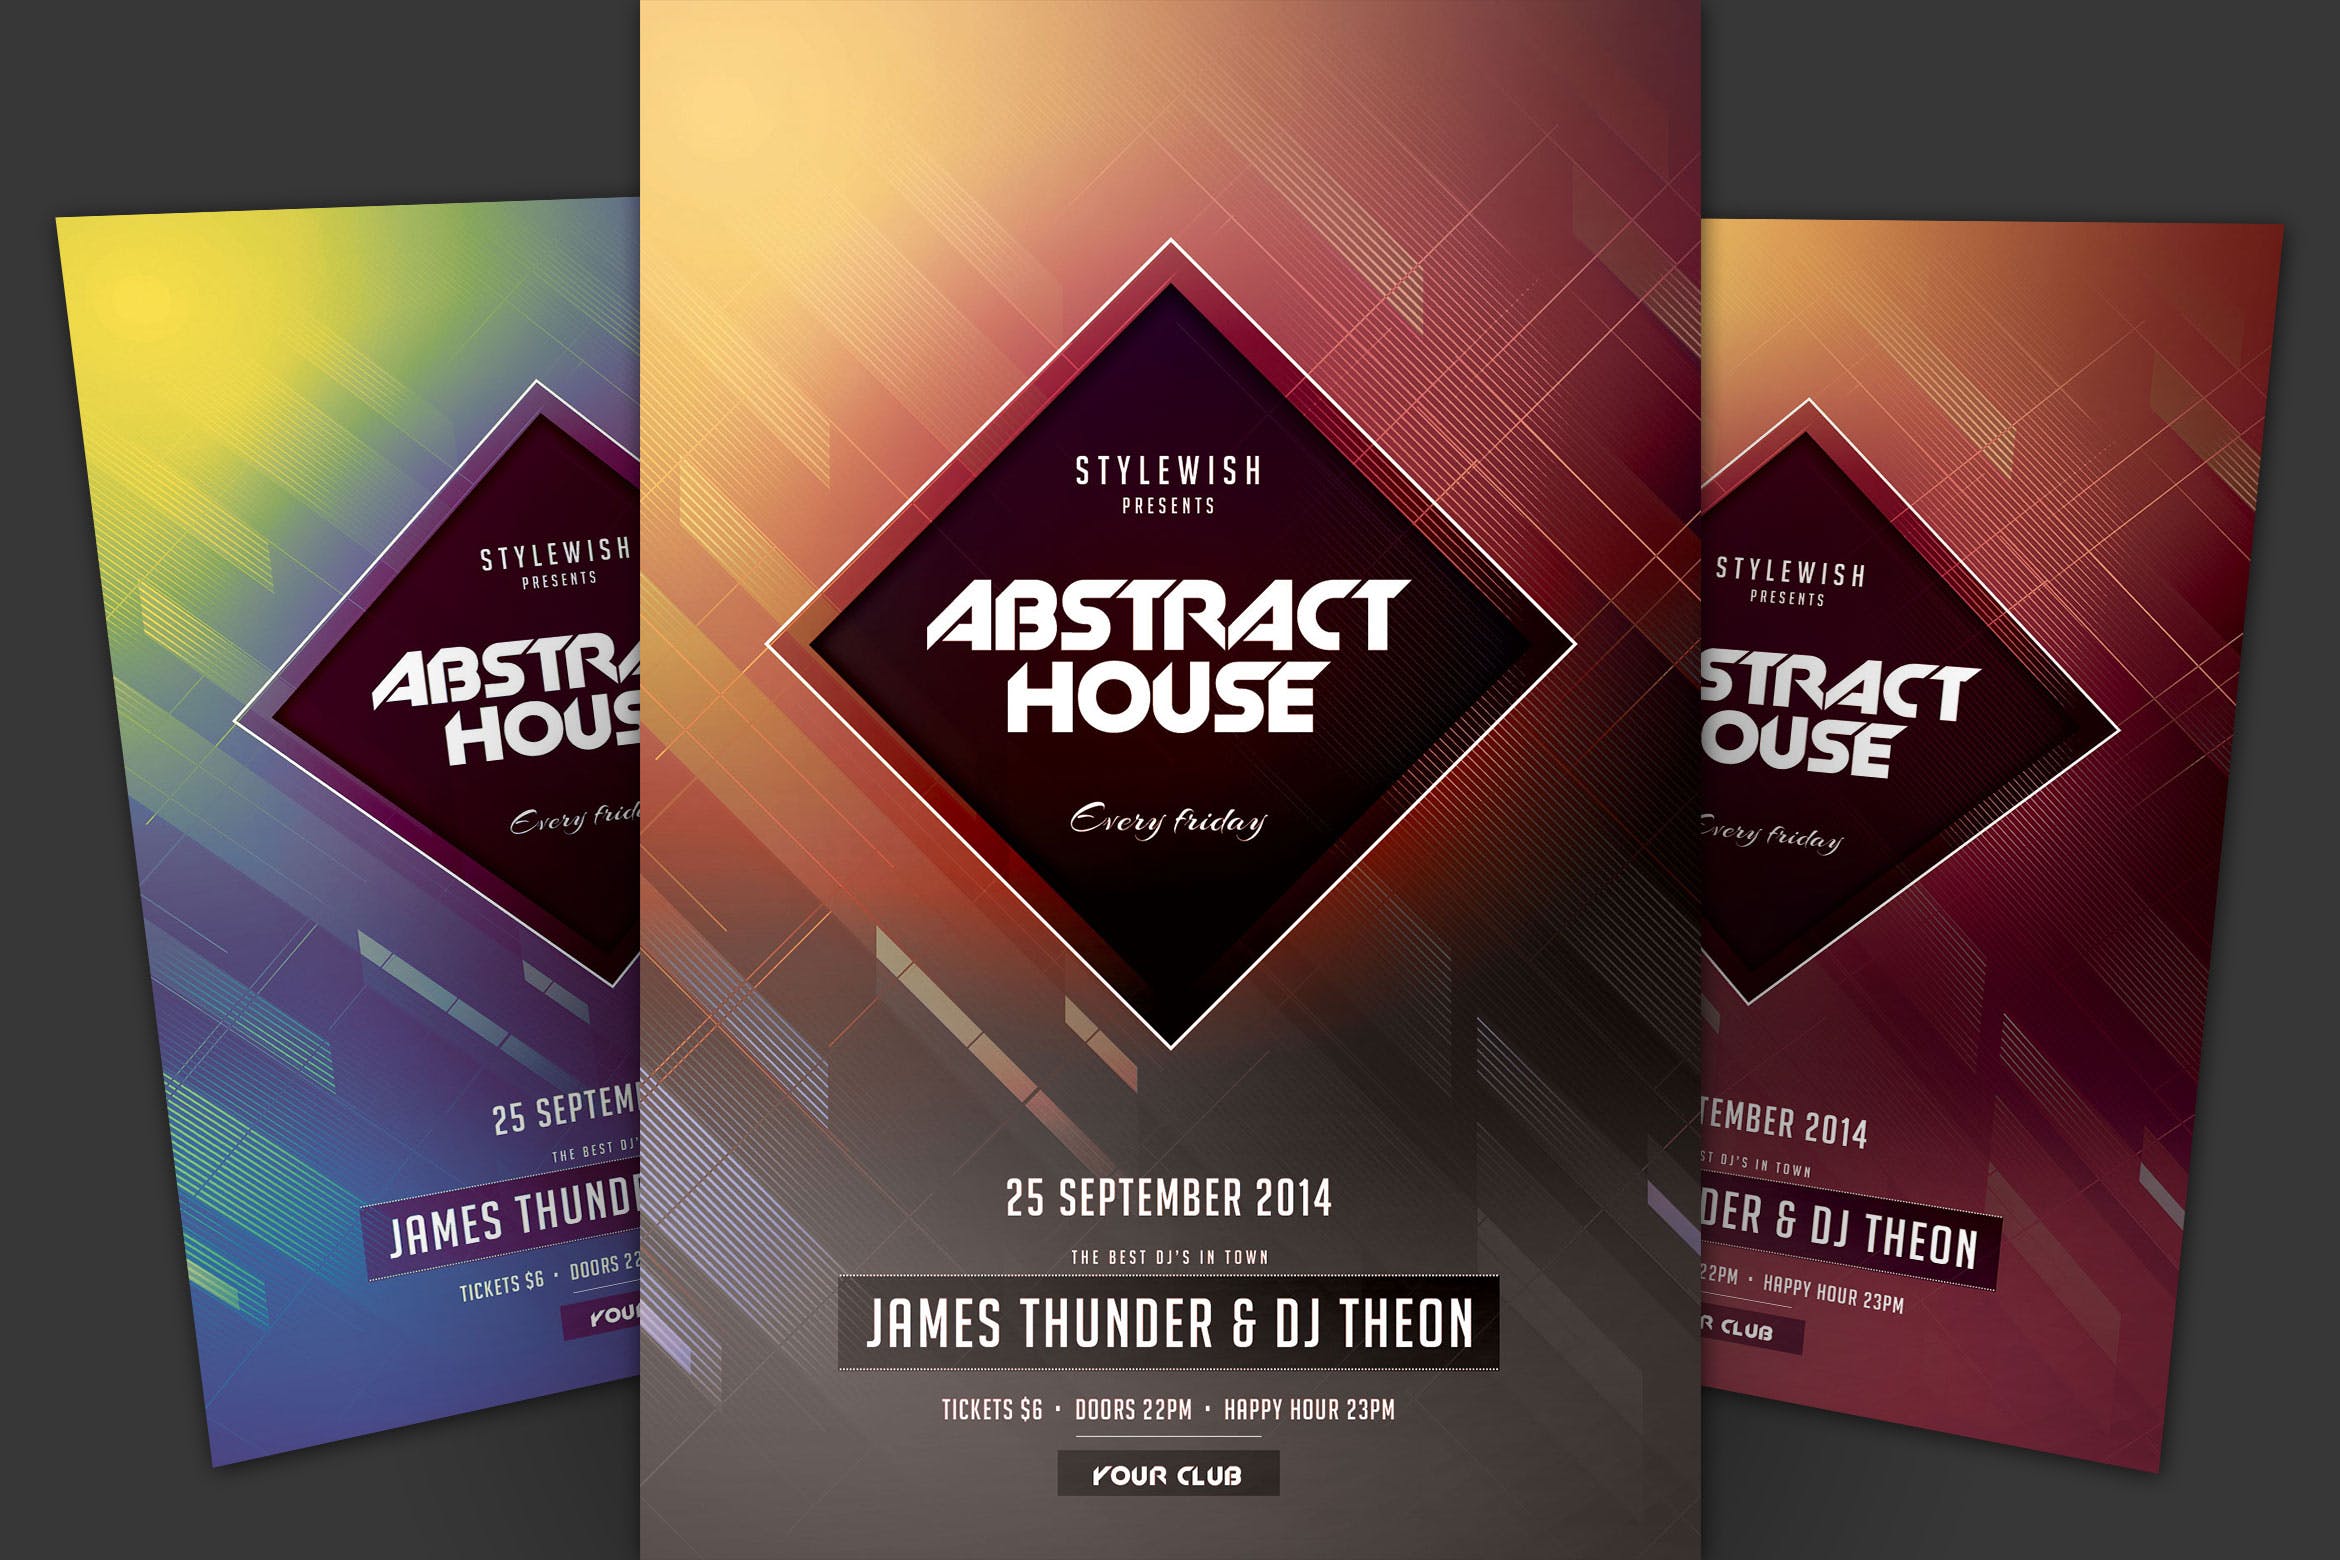 抽象设计风格现代音乐活动海报传单素材库精选PSD模板 Abstract House Flyer插图